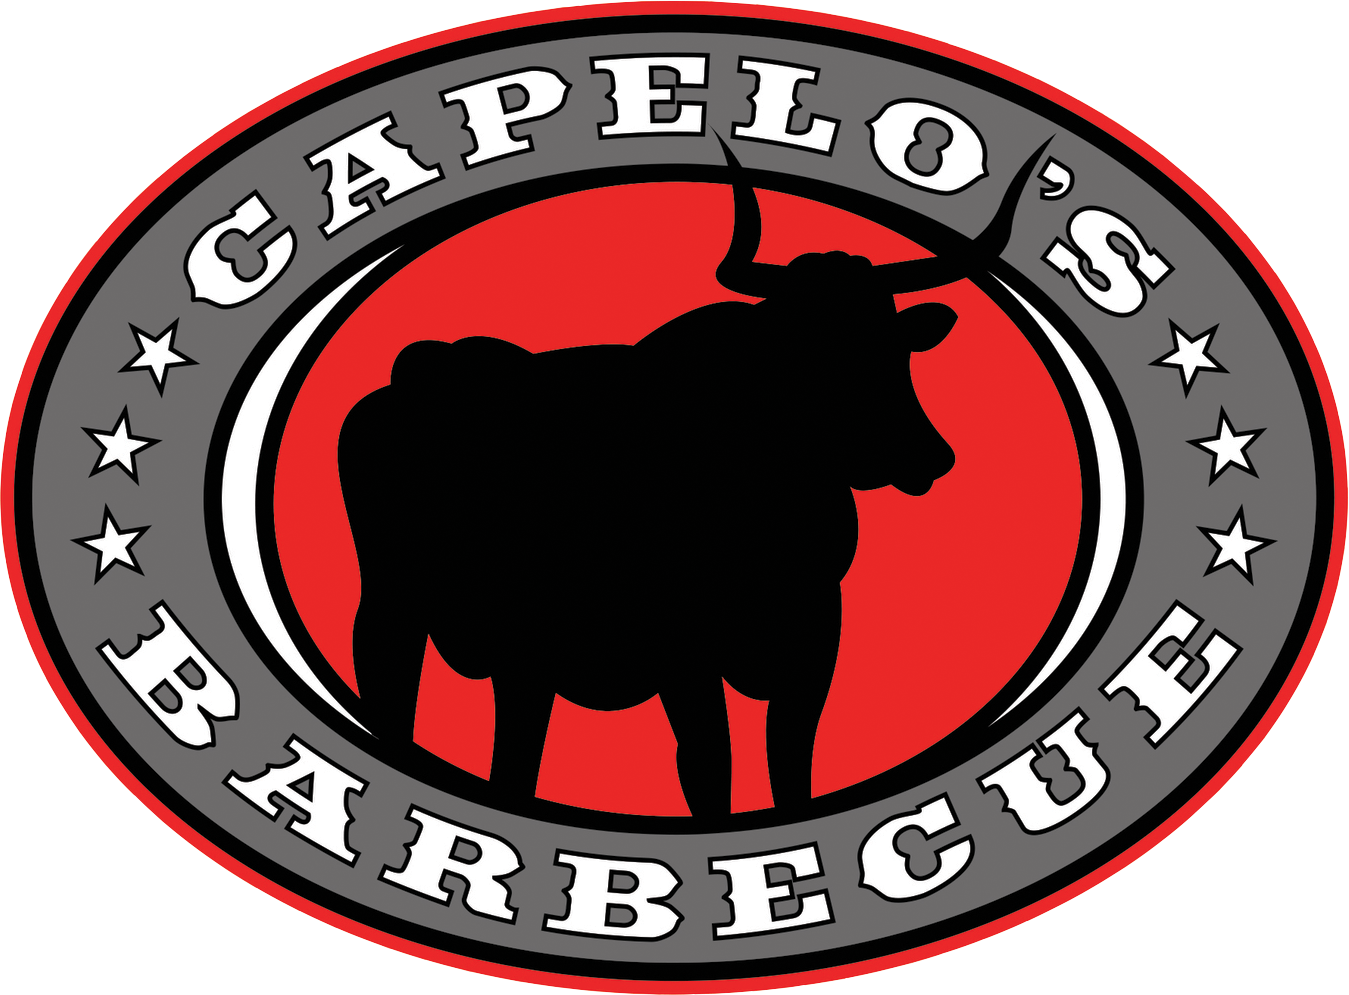 Capelo's Barbecue